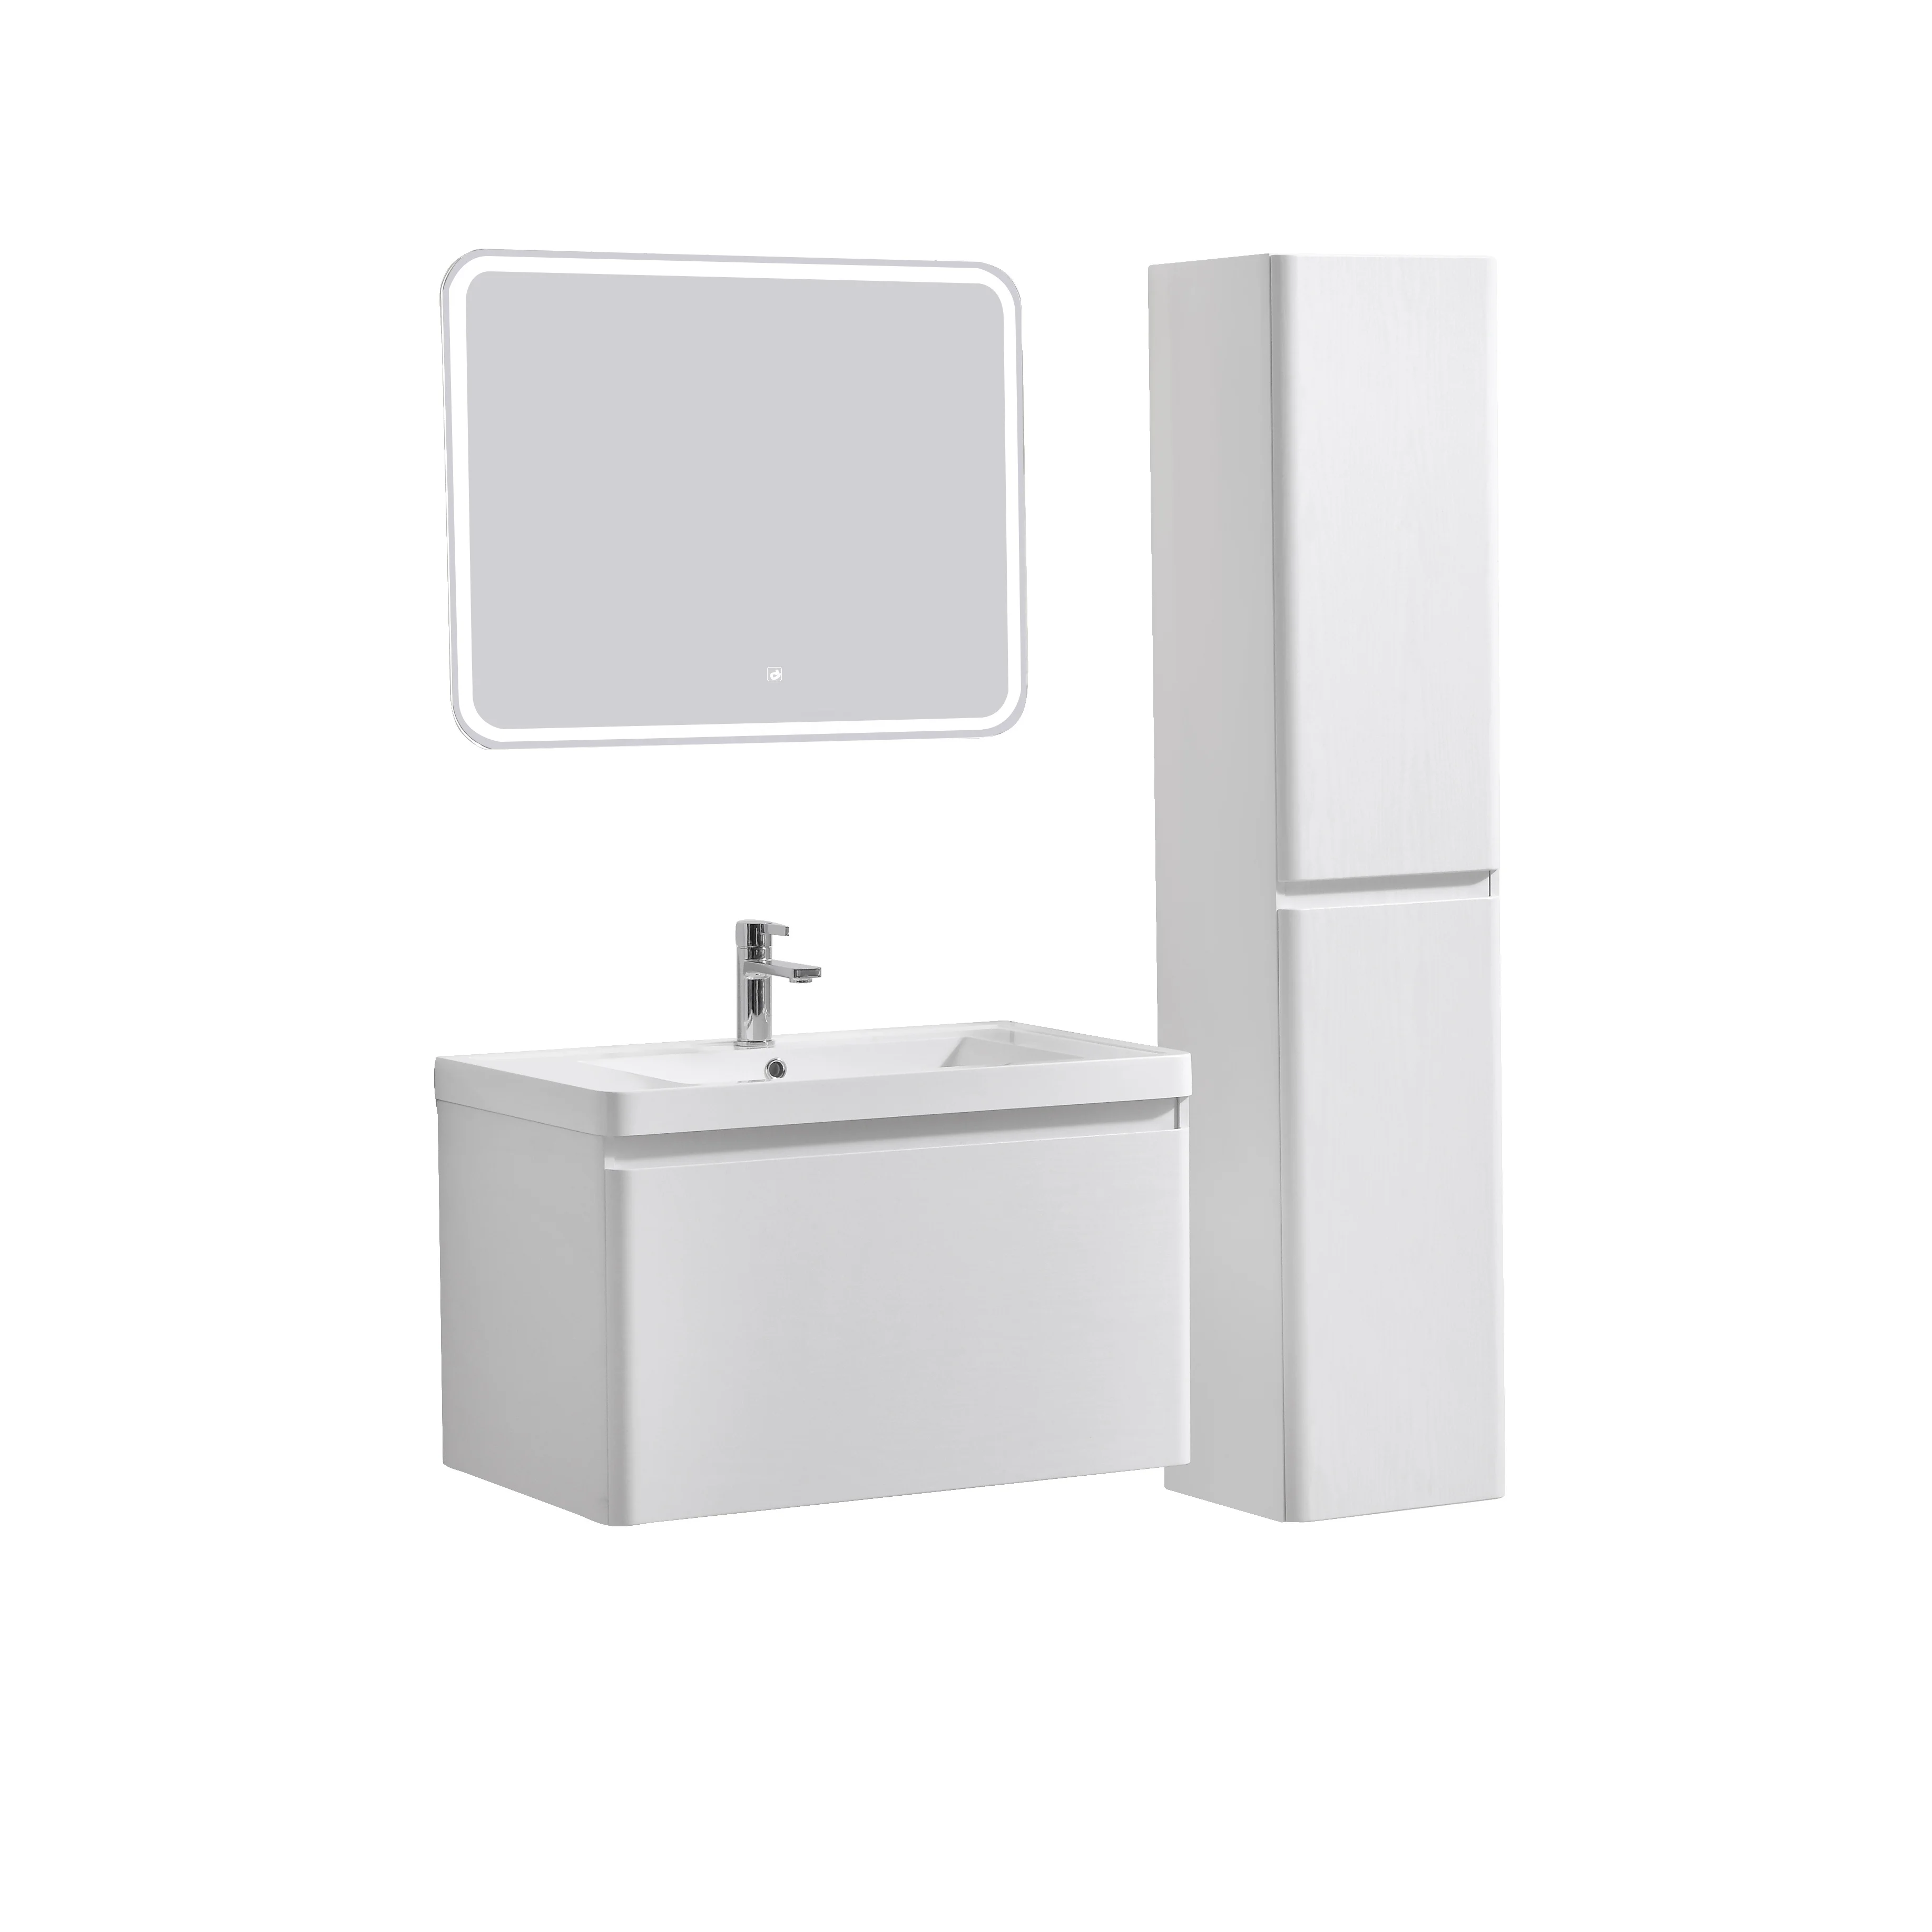 PVC Master Bathroom Vanity Cabinet Wash Basin Set Millor with LED light